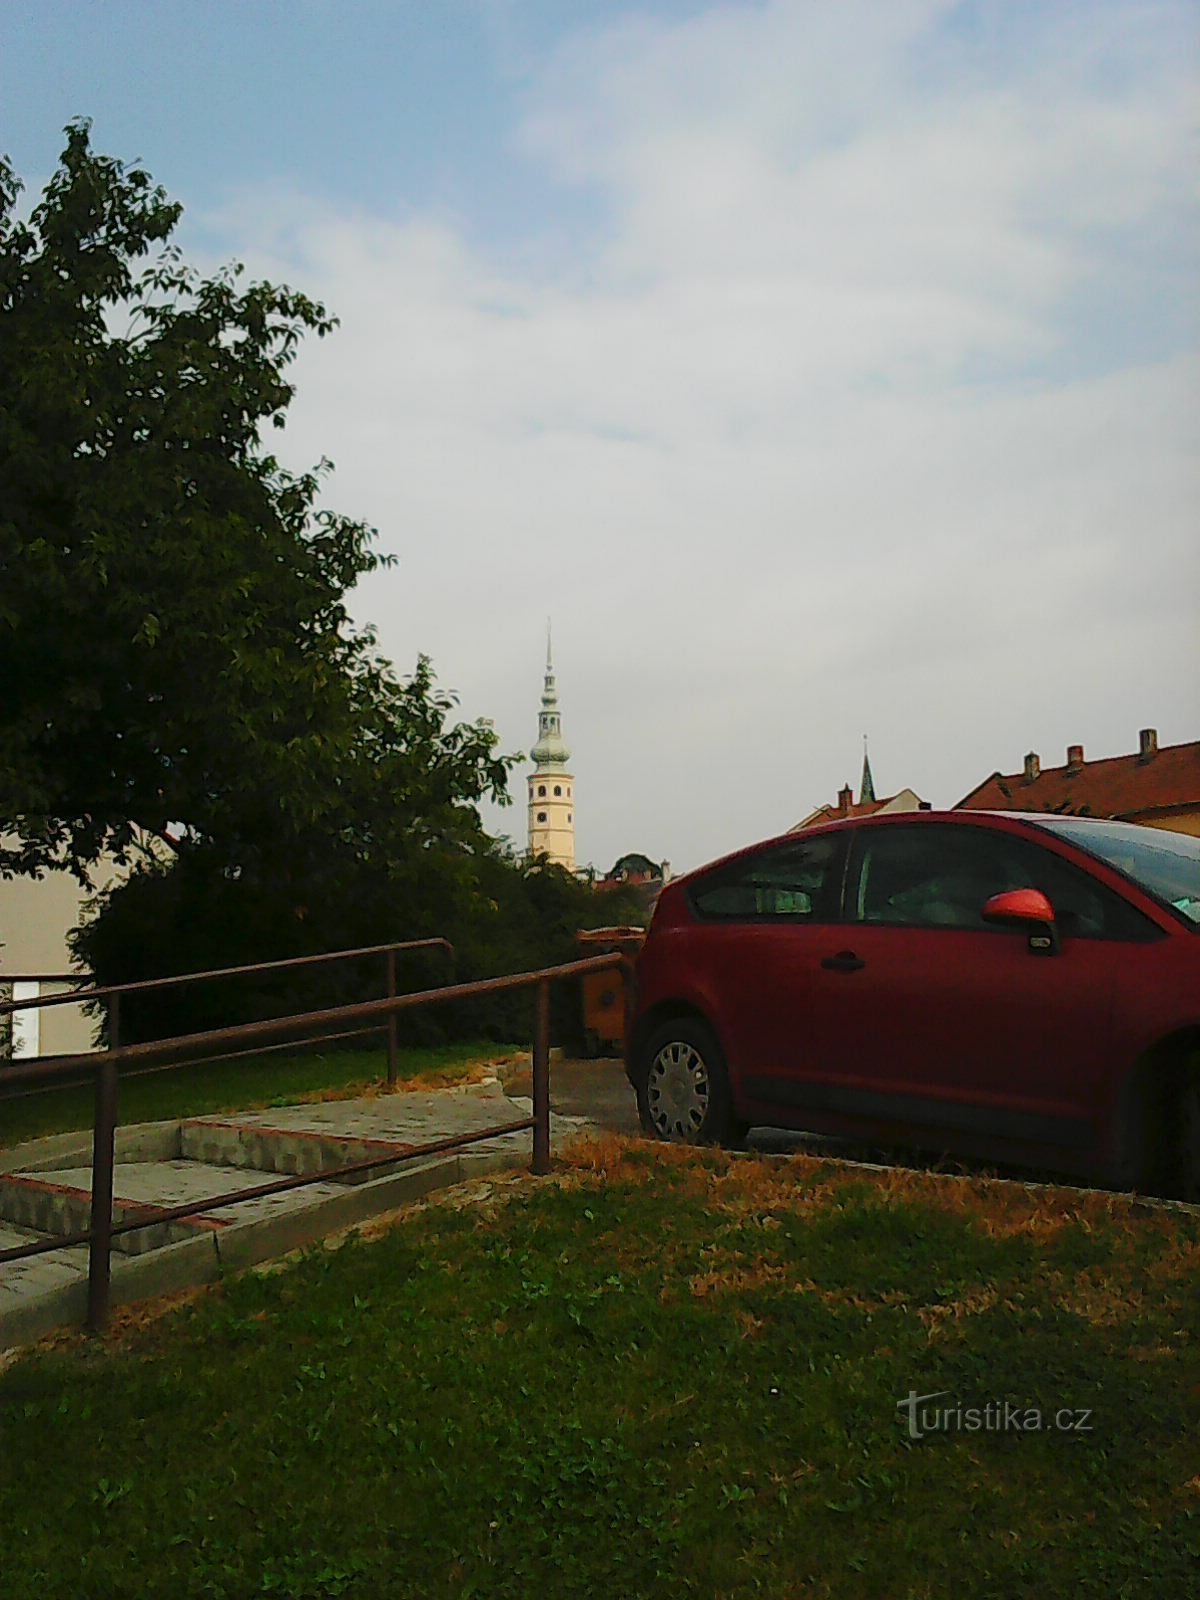 La torre del castillo Tovačovské visible desde la distancia - mi principal punto de referencia :)